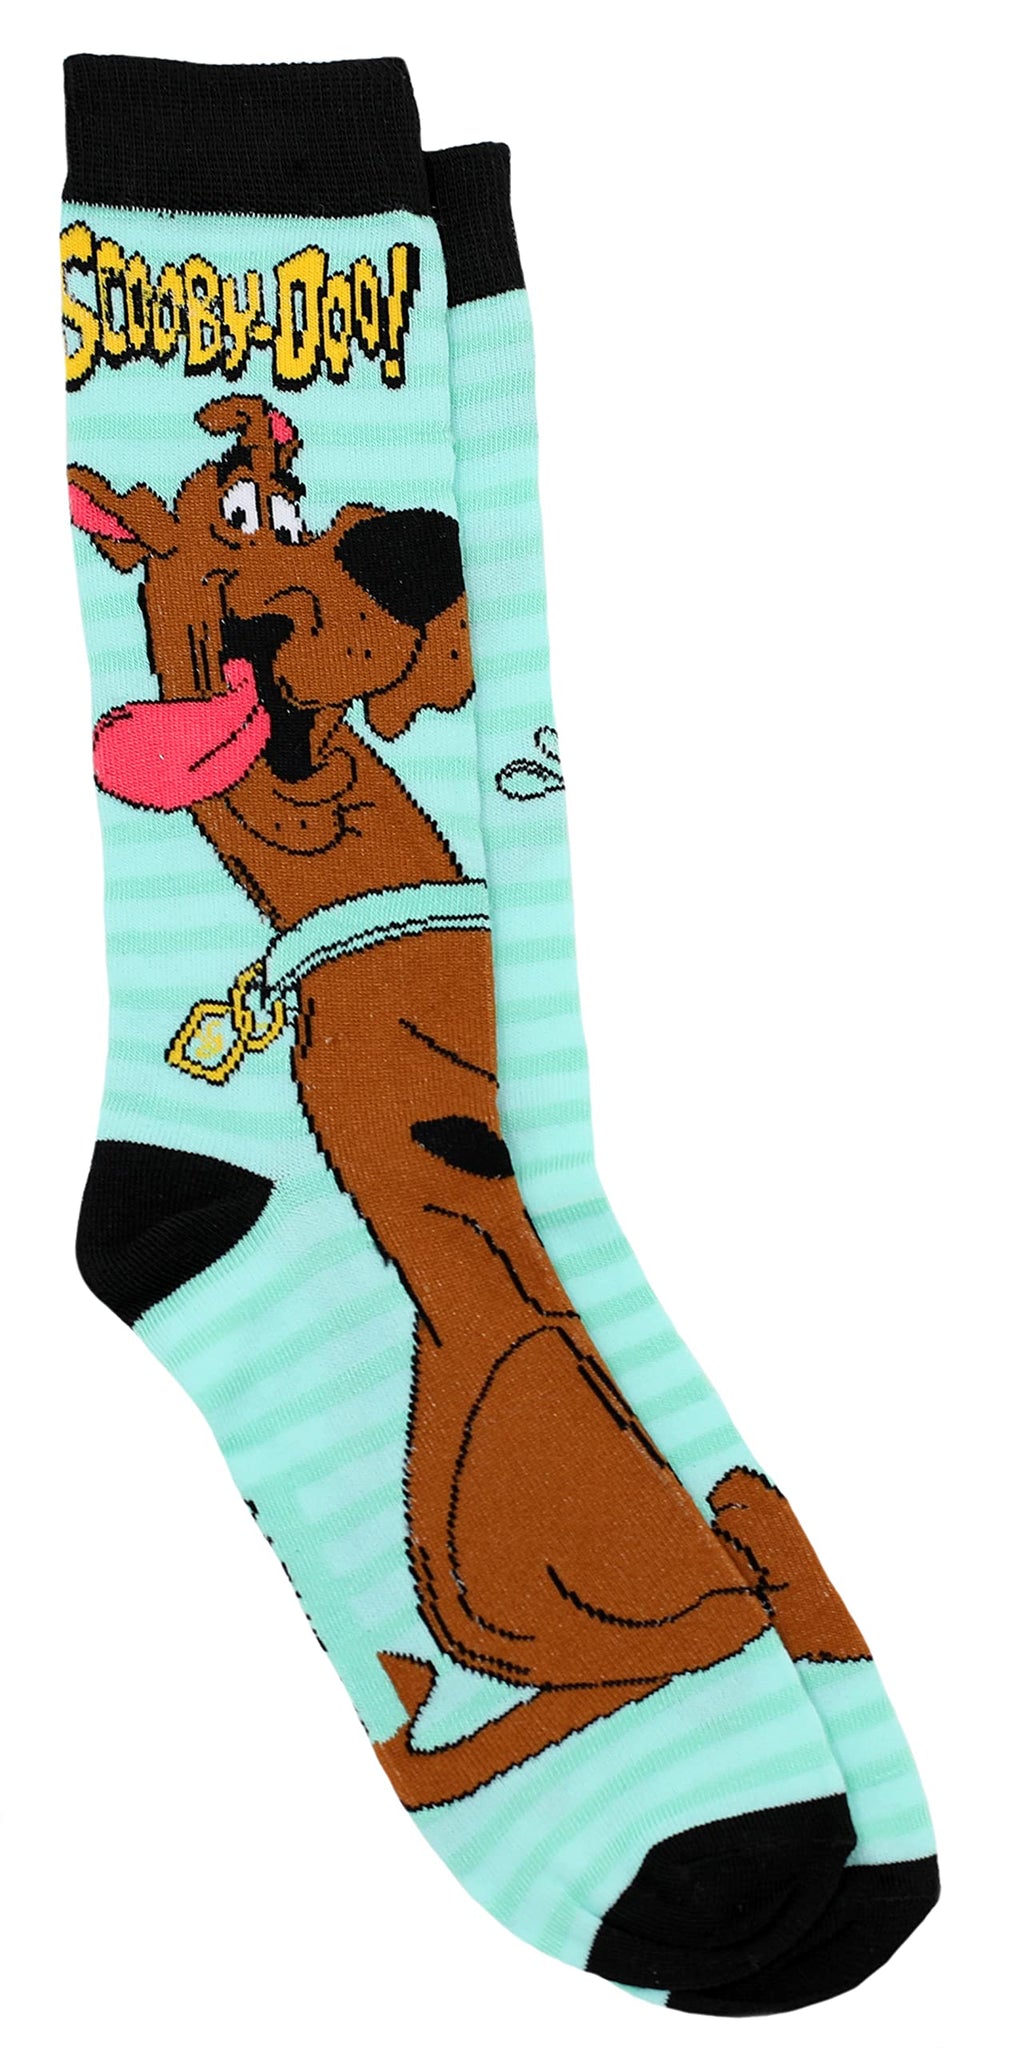 Scooby-Doo Men's 2 Pair Novelty Crew Socks Shoe Size 6-12, Teal